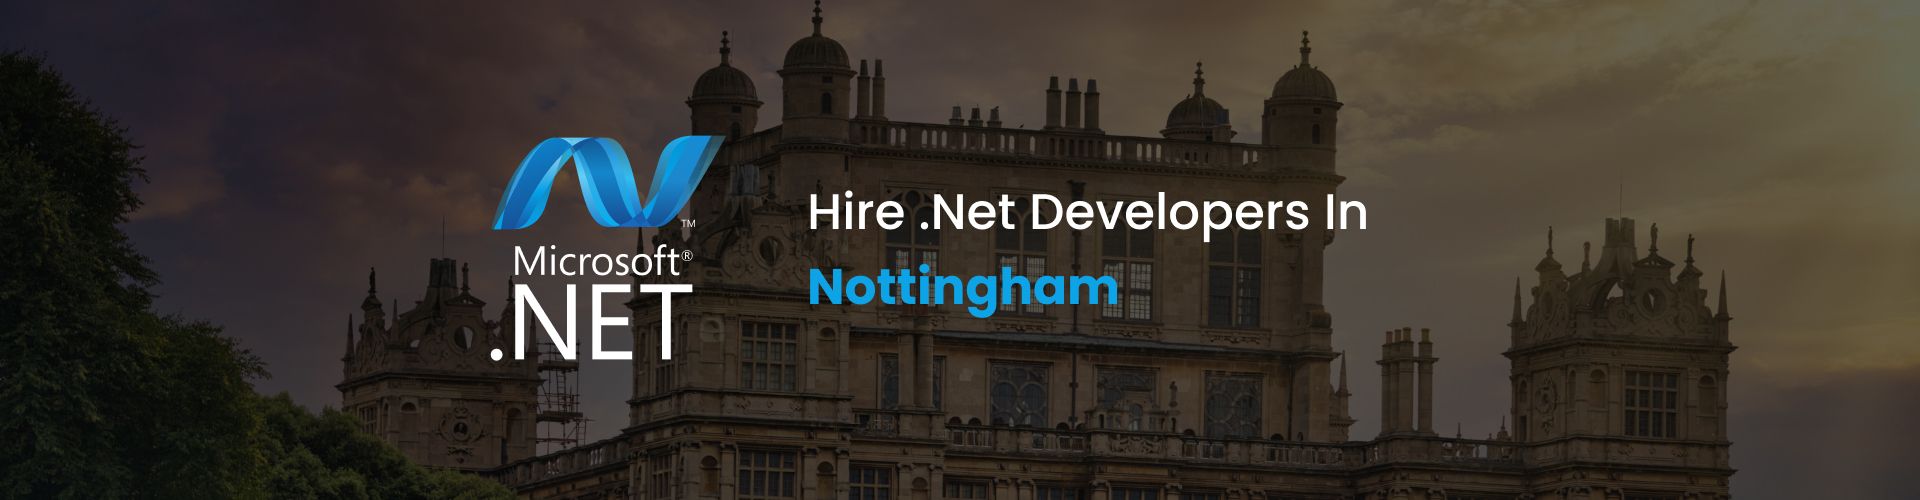 hire dot net developers in nottingham